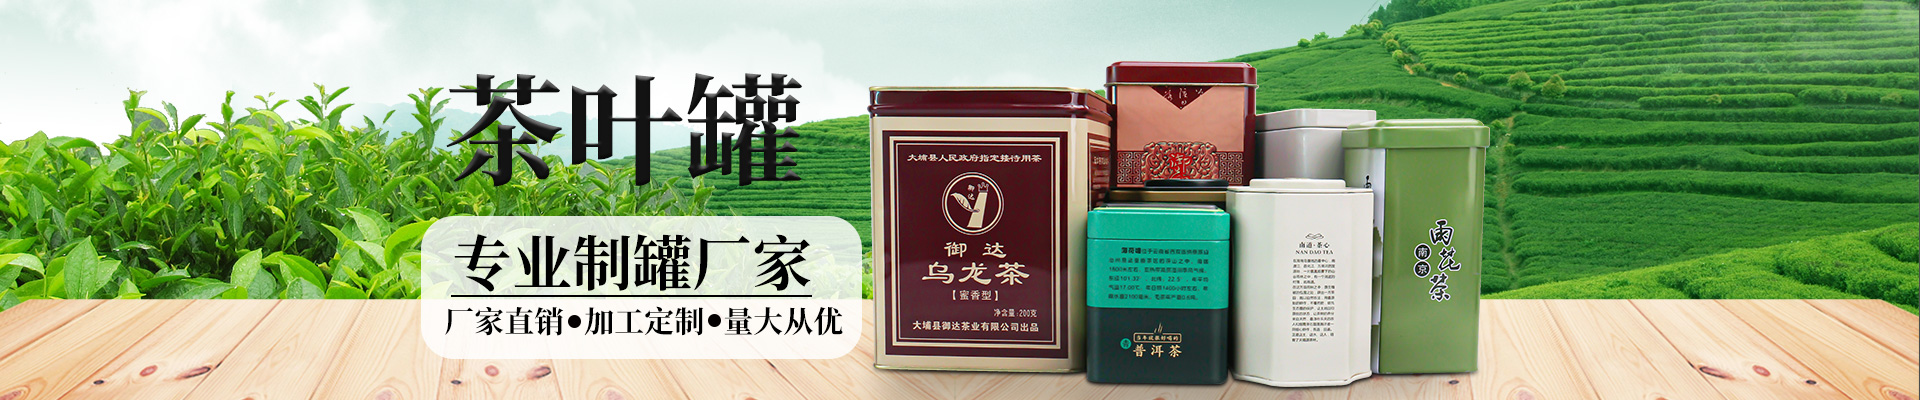 茶叶铁盒茶叶半岛·综合「中国」官方网站小横图